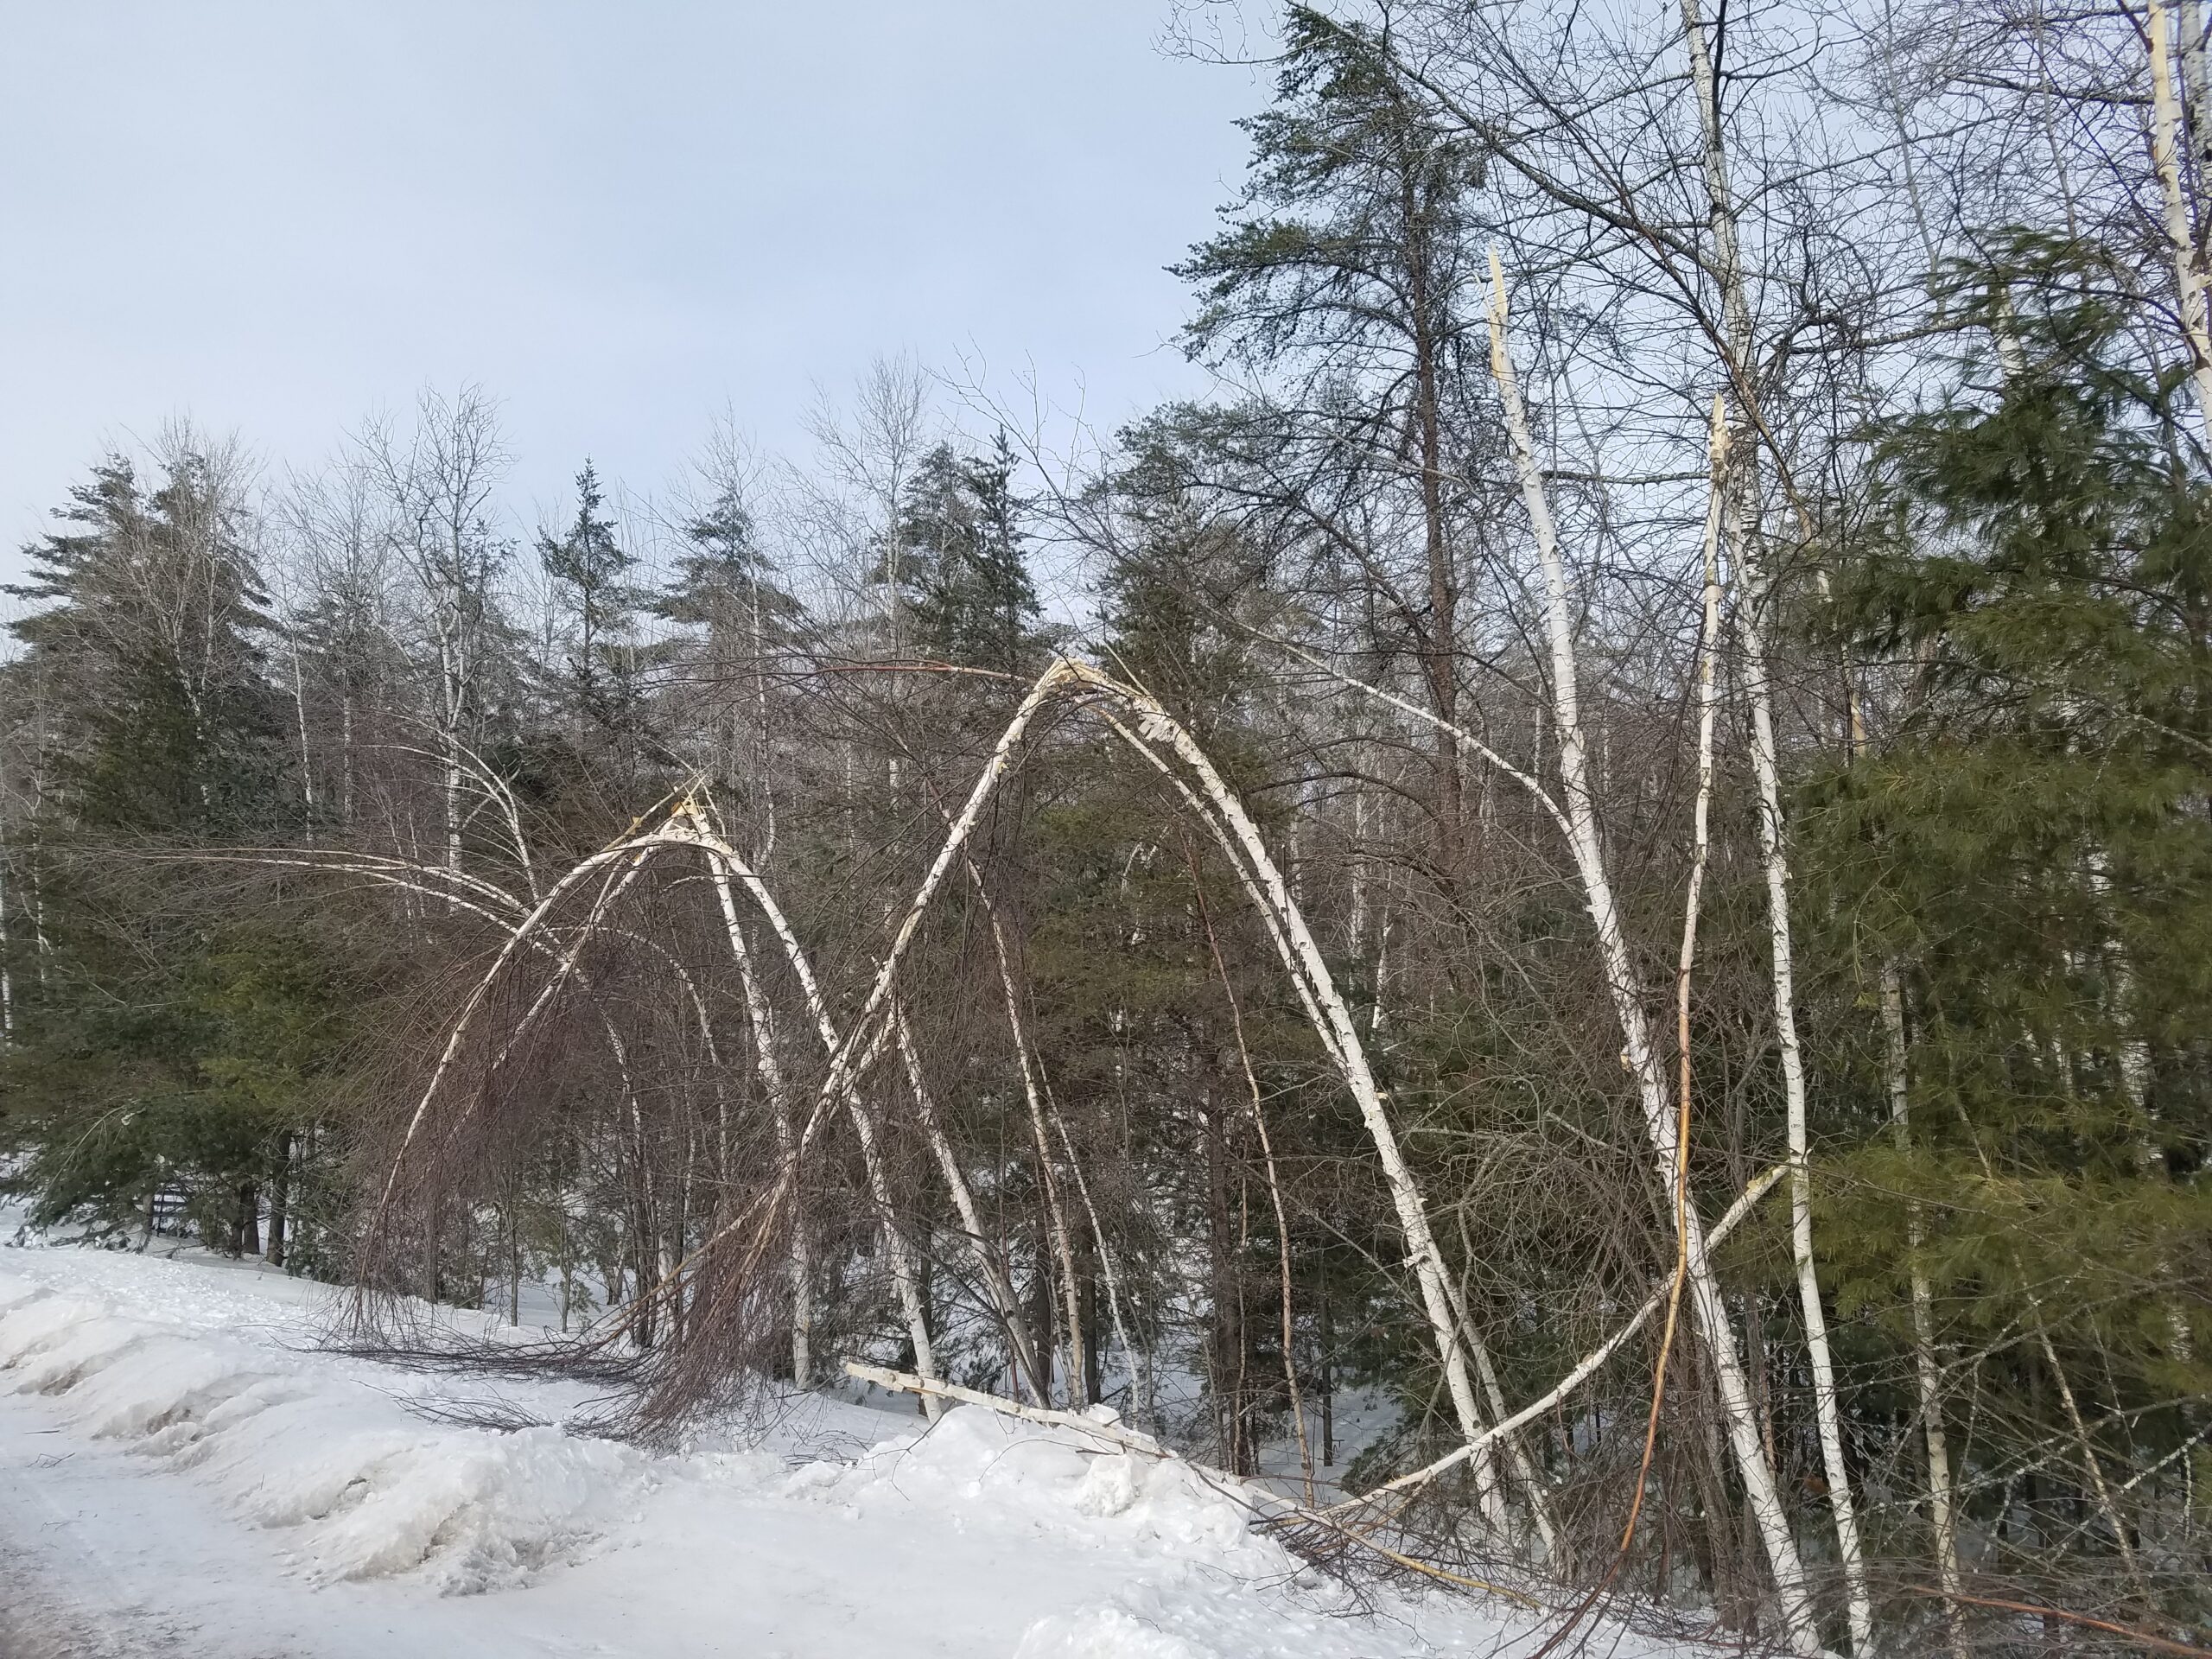 Broken birch stems on forest edge.